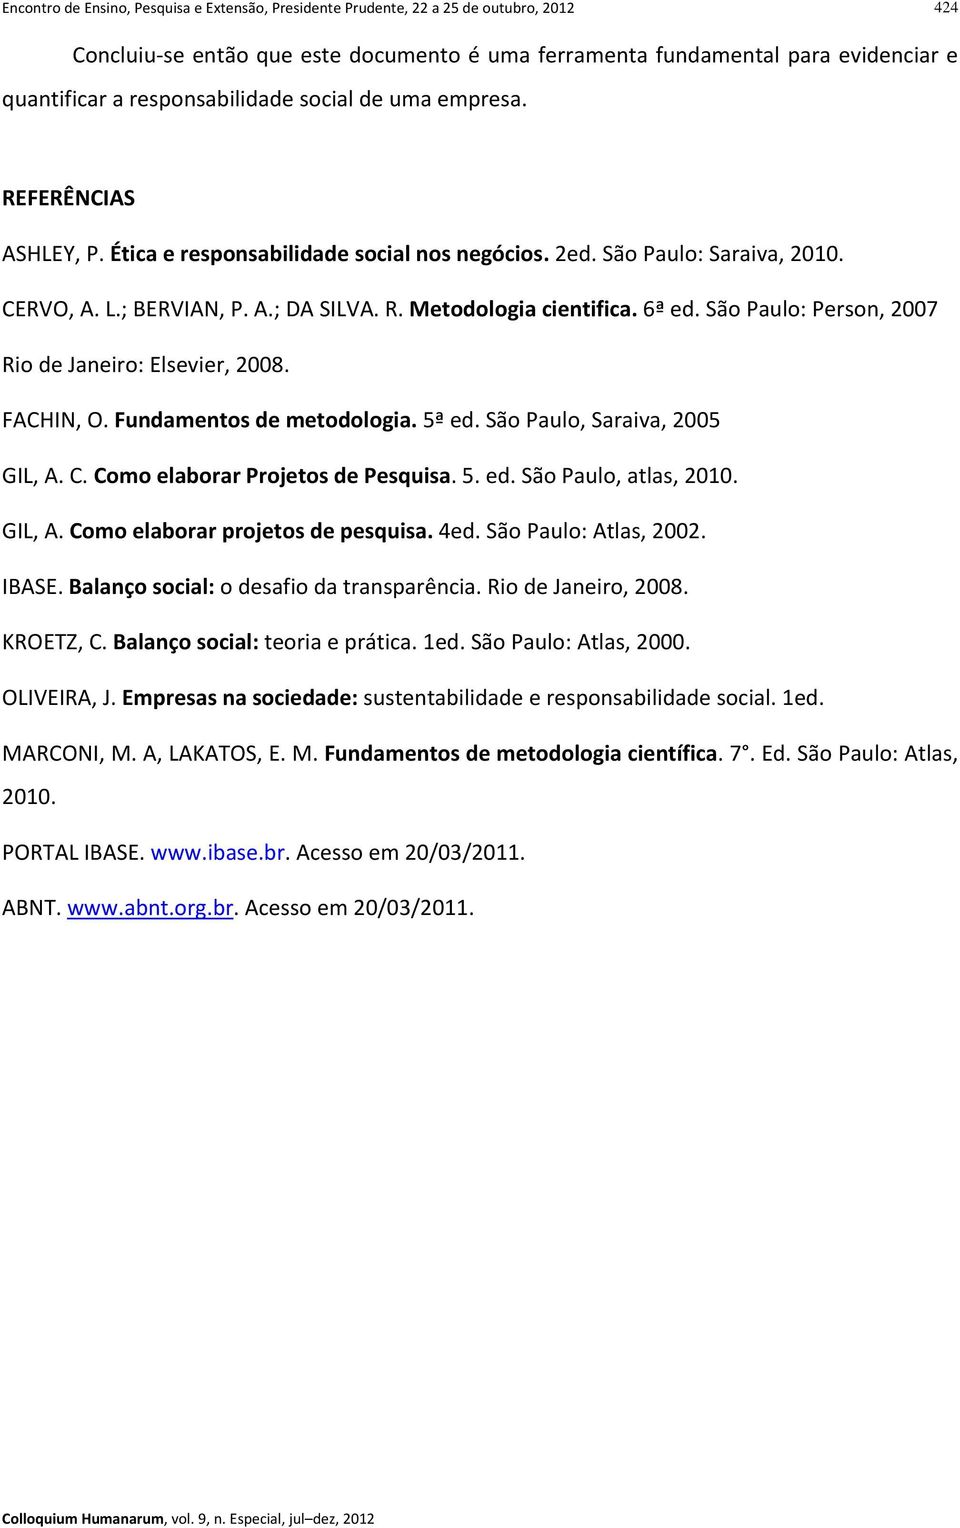 6ª ed. São Paulo: Person, 2007 Rio de Janeiro: Elsevier, 2008. FACHIN, O. Fundamentos de metodologia. 5ª ed. São Paulo, Saraiva, 2005 GIL, A. C. Como elaborar Projetos de Pesquisa. 5. ed. São Paulo, atlas, 2010.